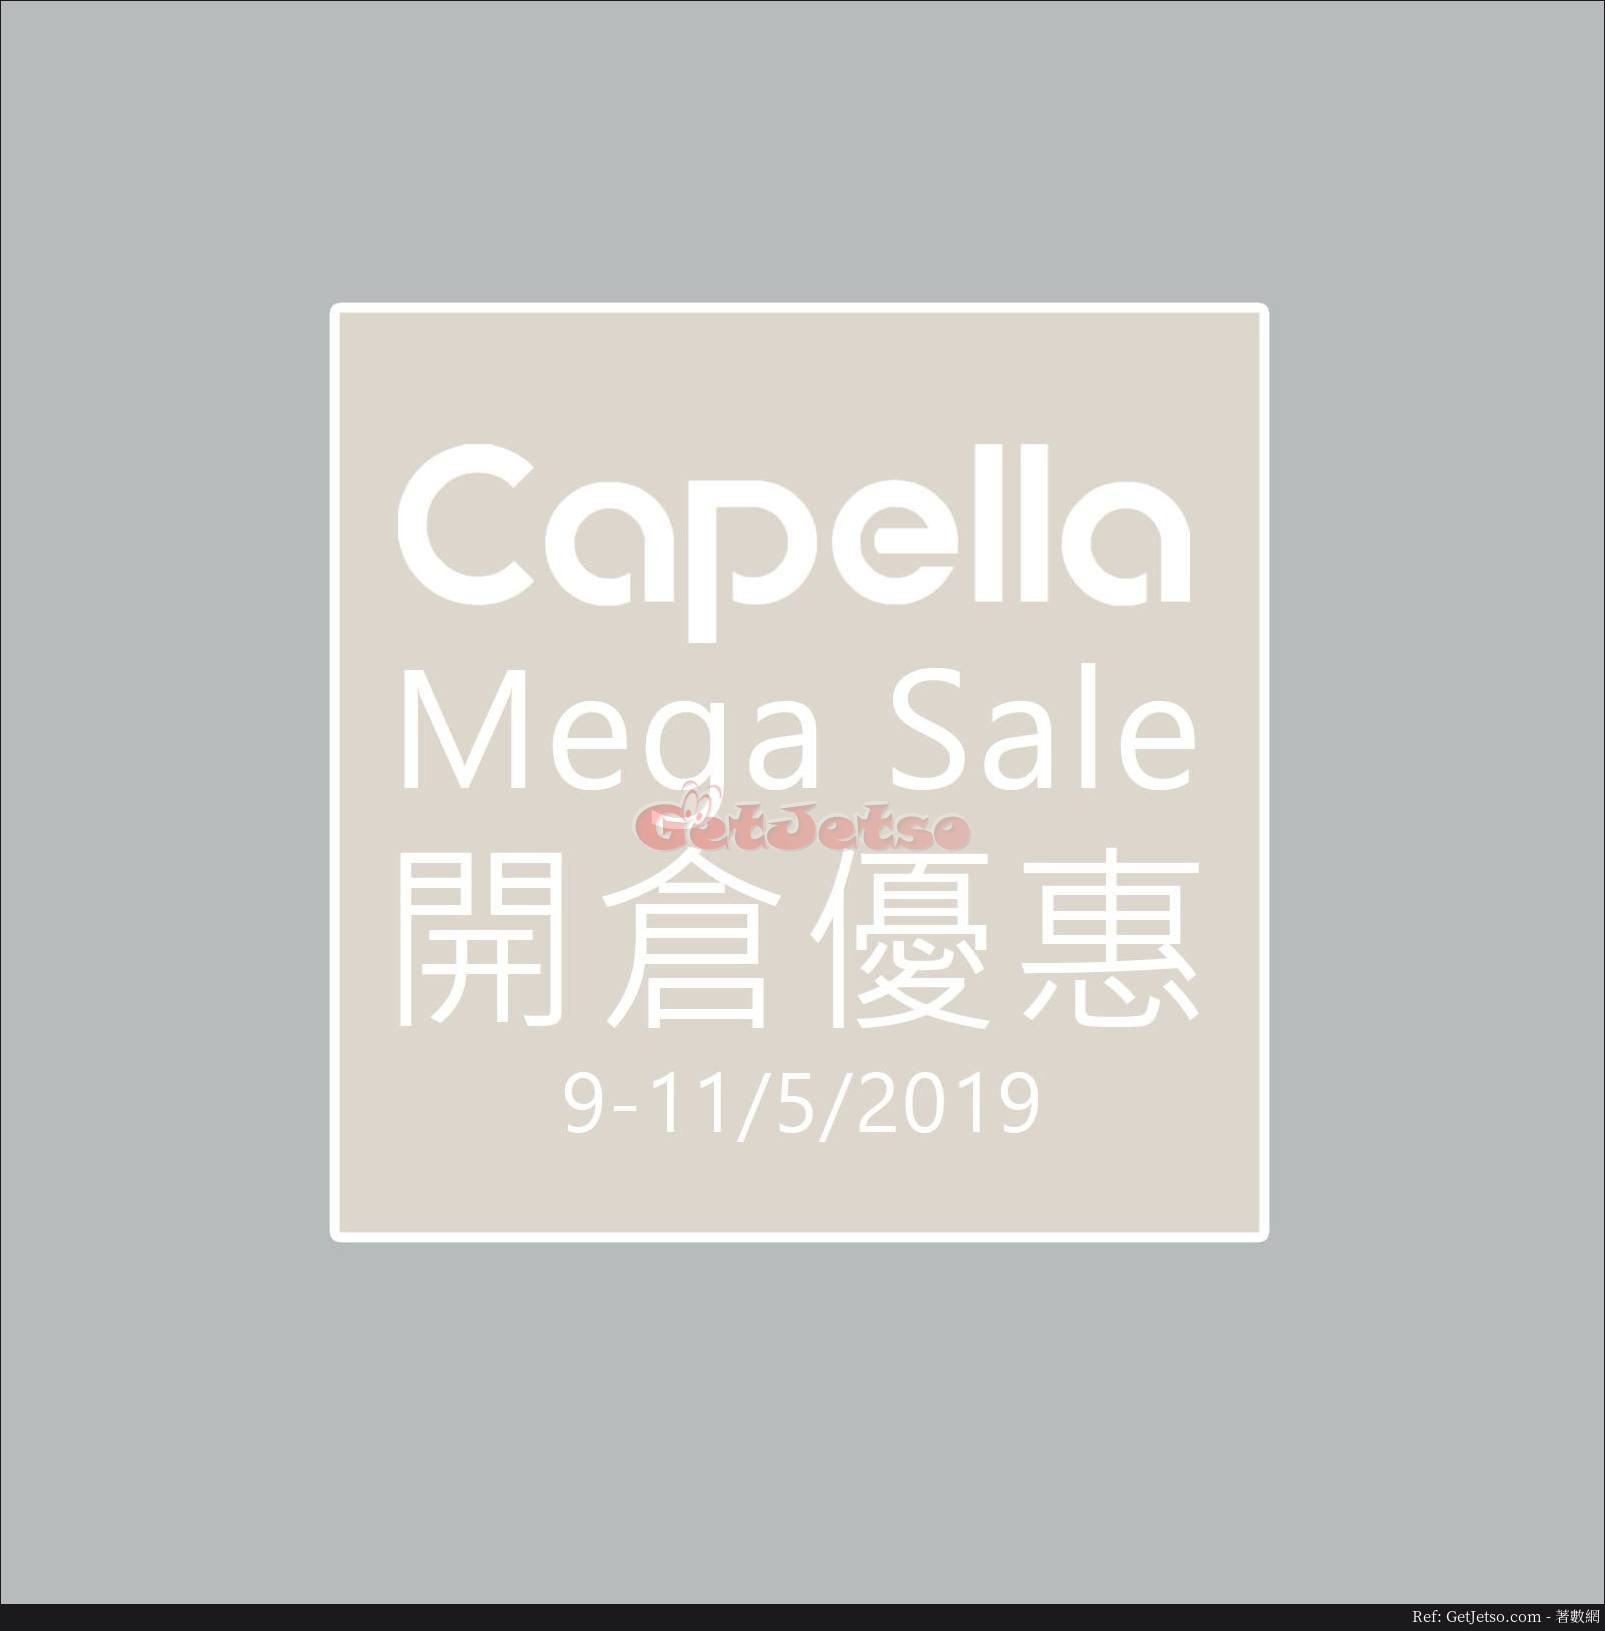 Capella 低至2折開倉優惠(19年5月9-11日)圖片1